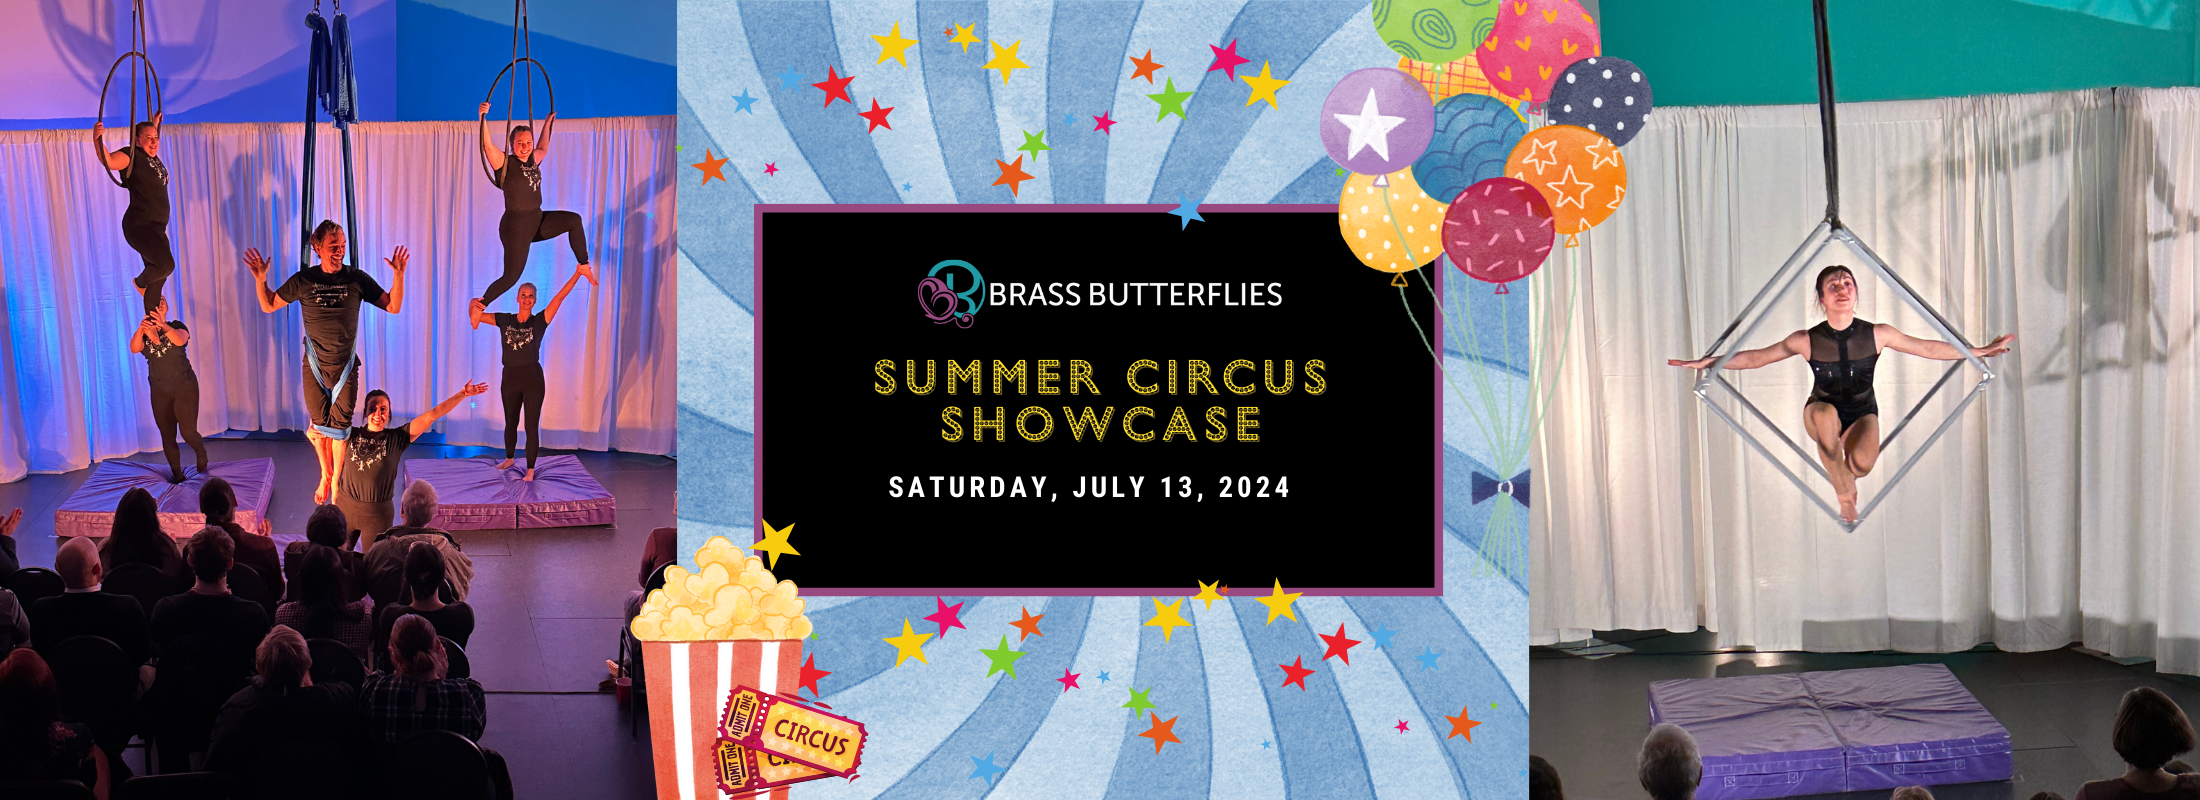 Brass Butterflies Summer Circus Showcase 